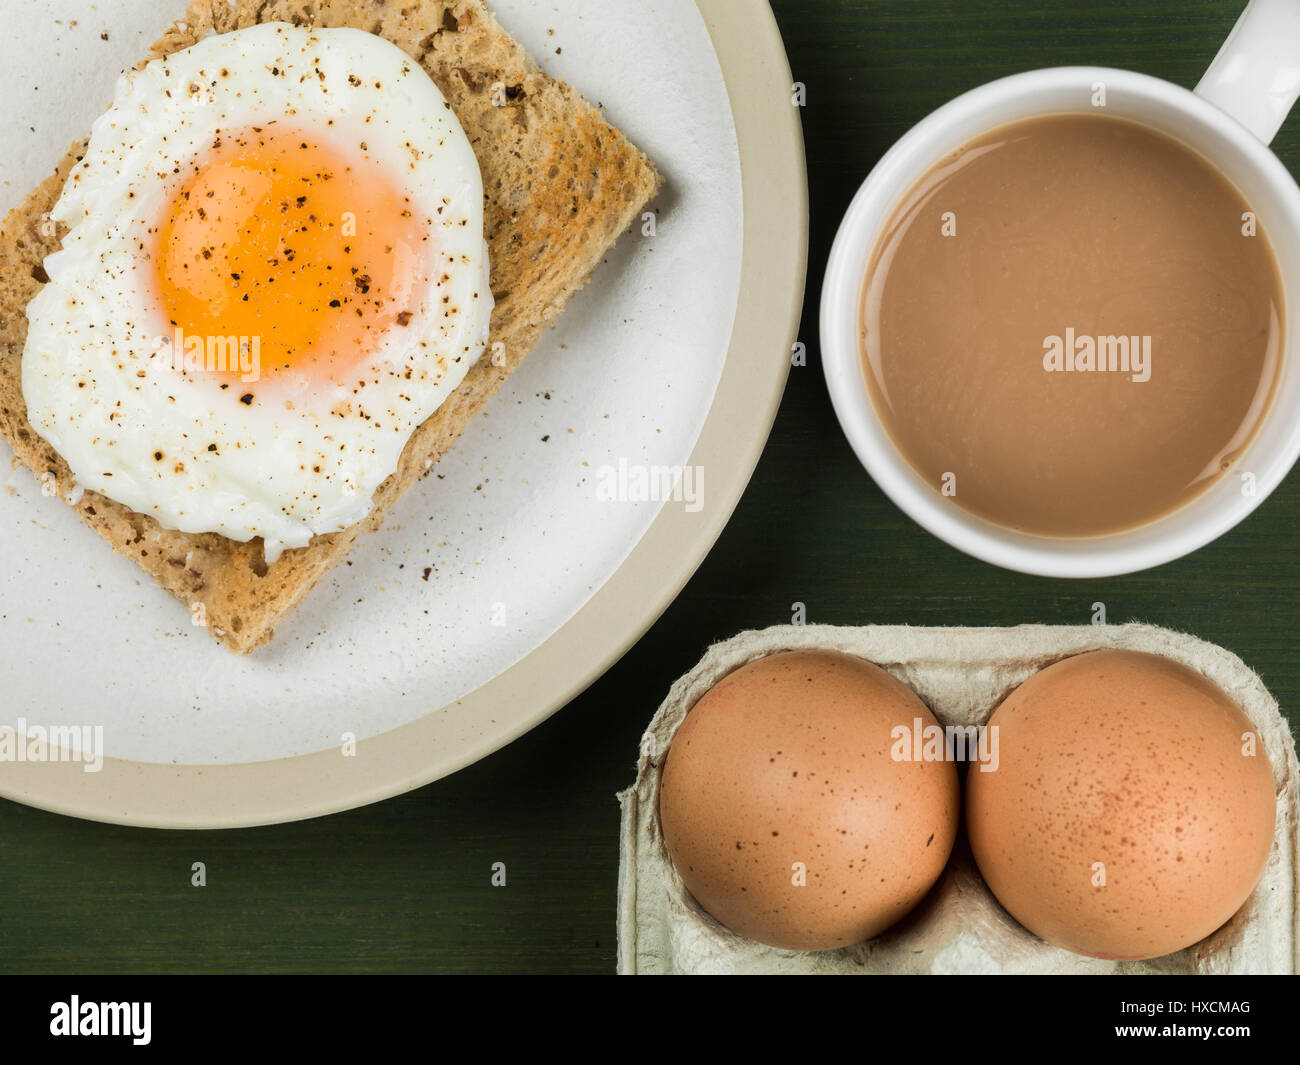 Piano di composizione dei laici e strette del raccolto di un uovo in camicia su Toast, Sunny Side Up, prima colazione con una tazza di tè o caffè e due uova crude nei loro gusci Foto Stock